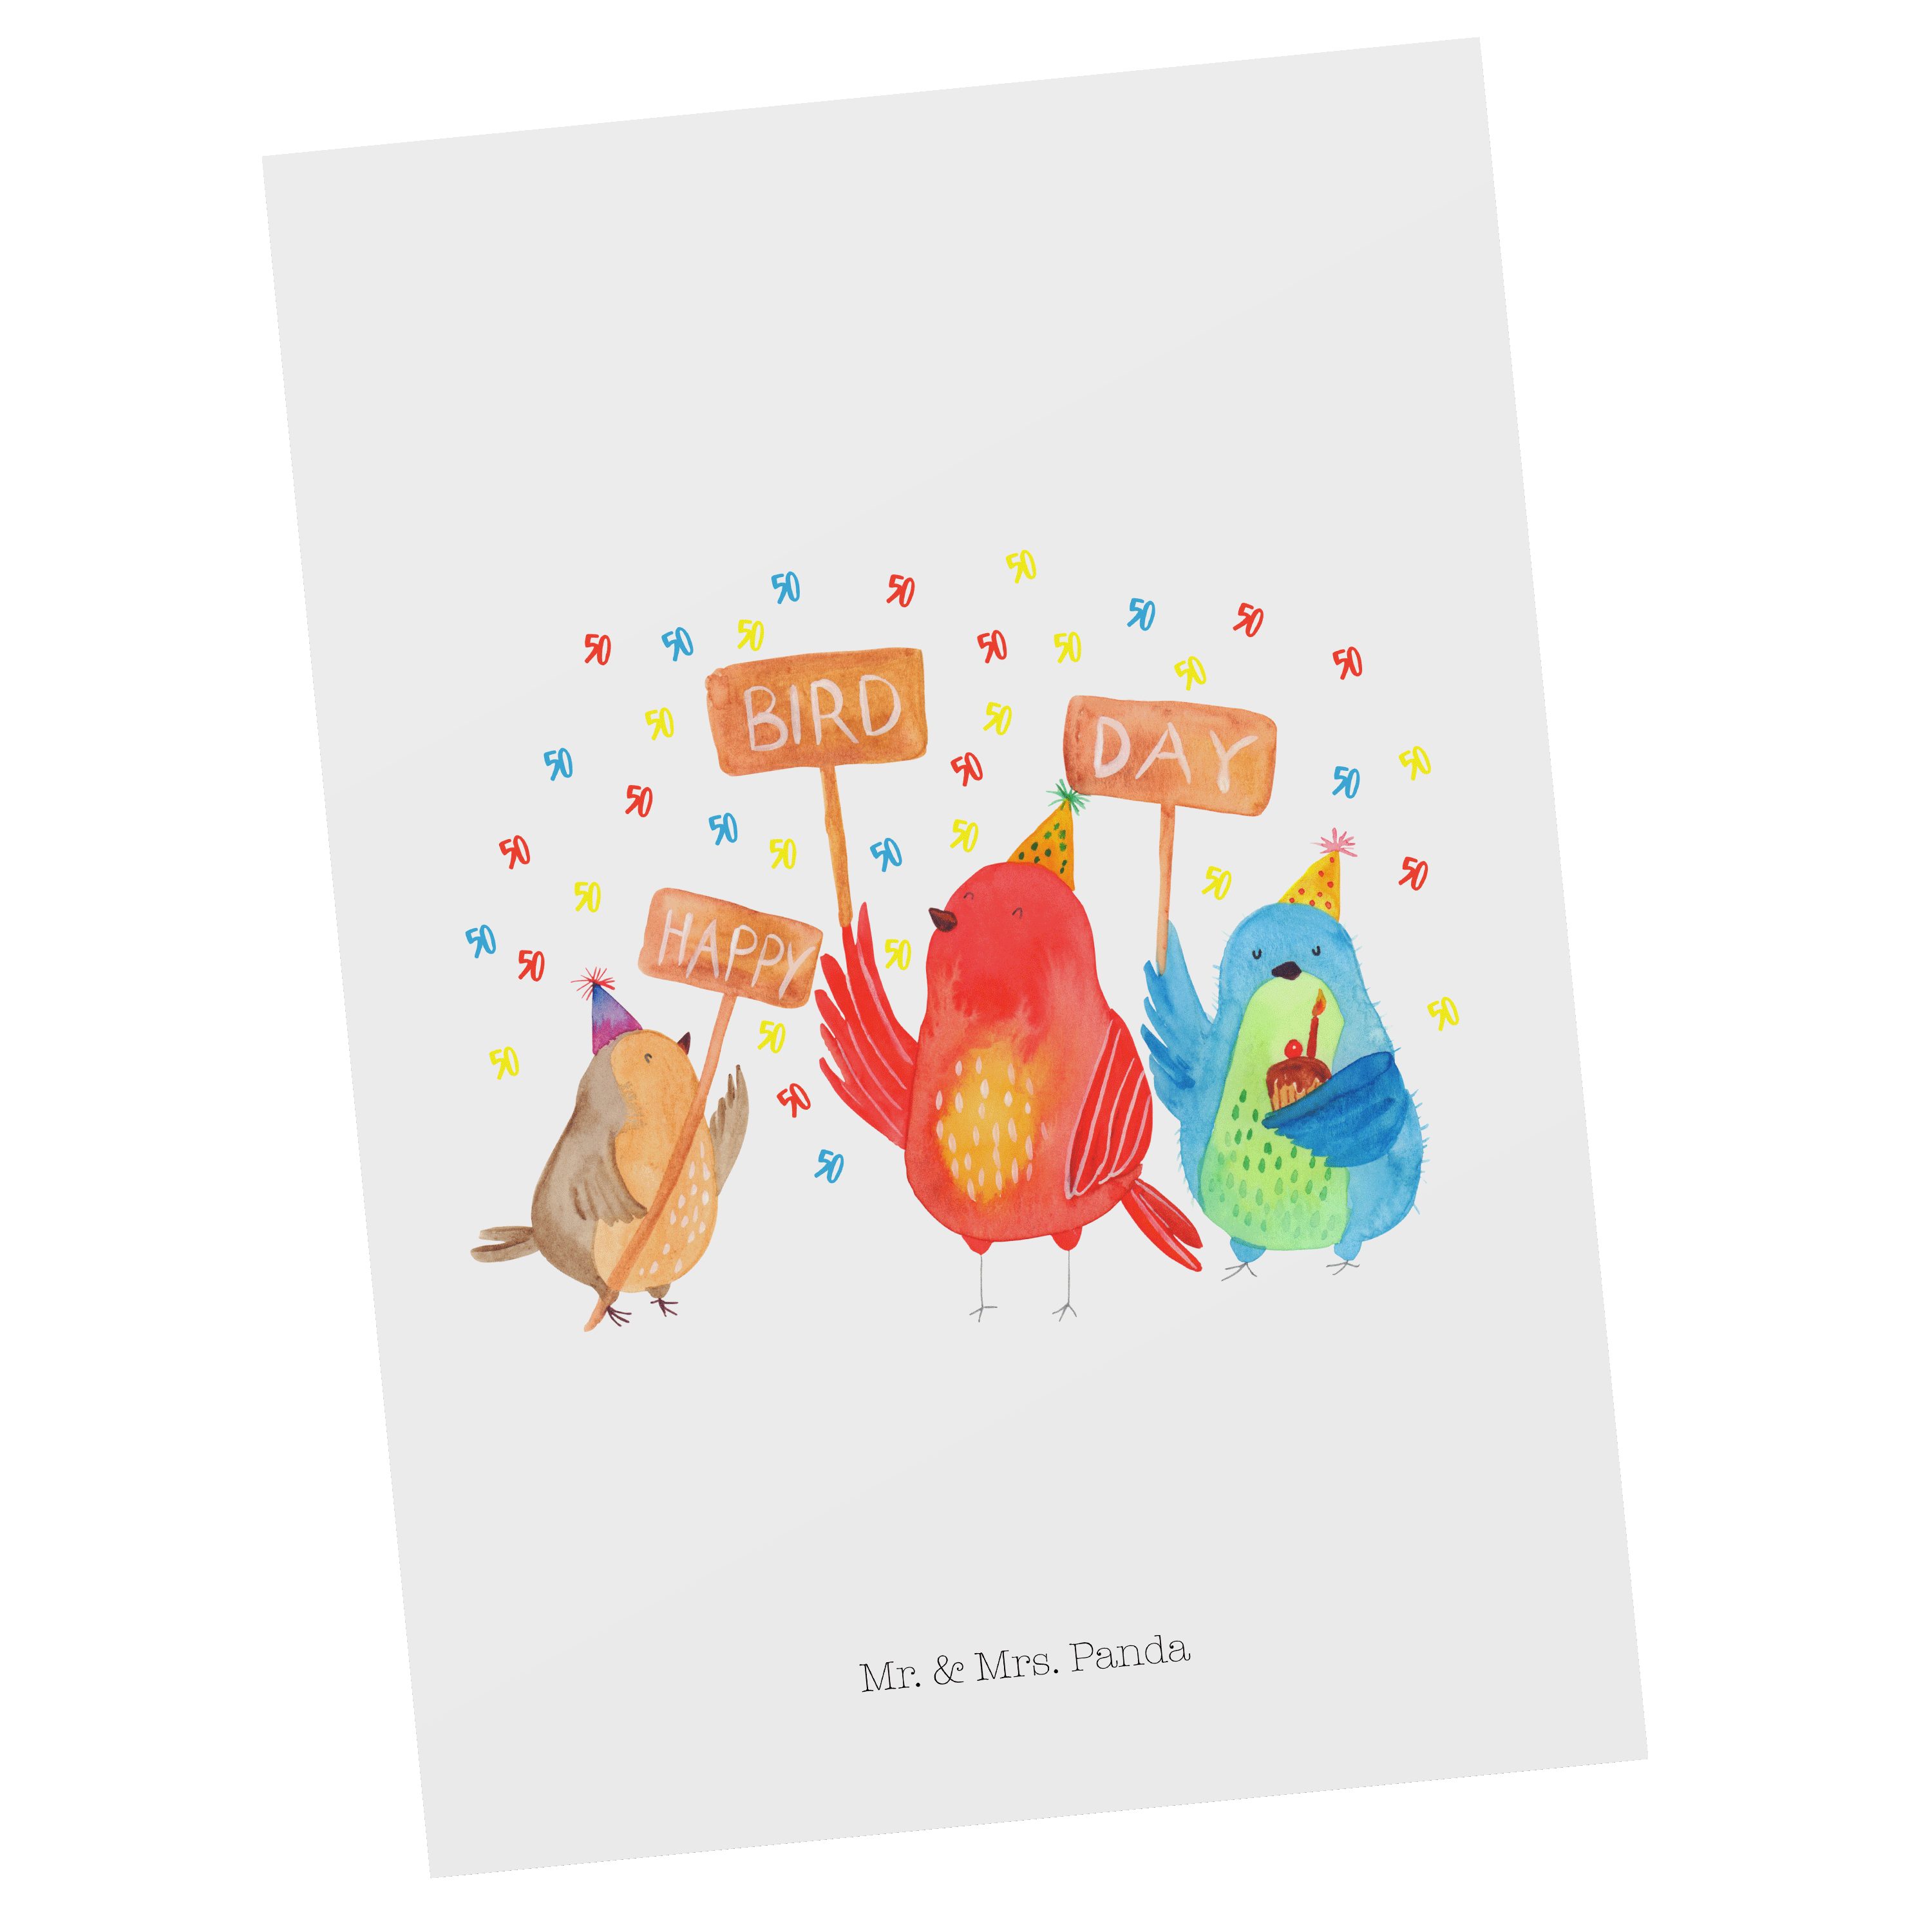 Mr. & Mrs. Panda Postkarte 50. Geburtstag Happy Bird Day - Weiß - Geschenk, Geburtstagsgeschenk